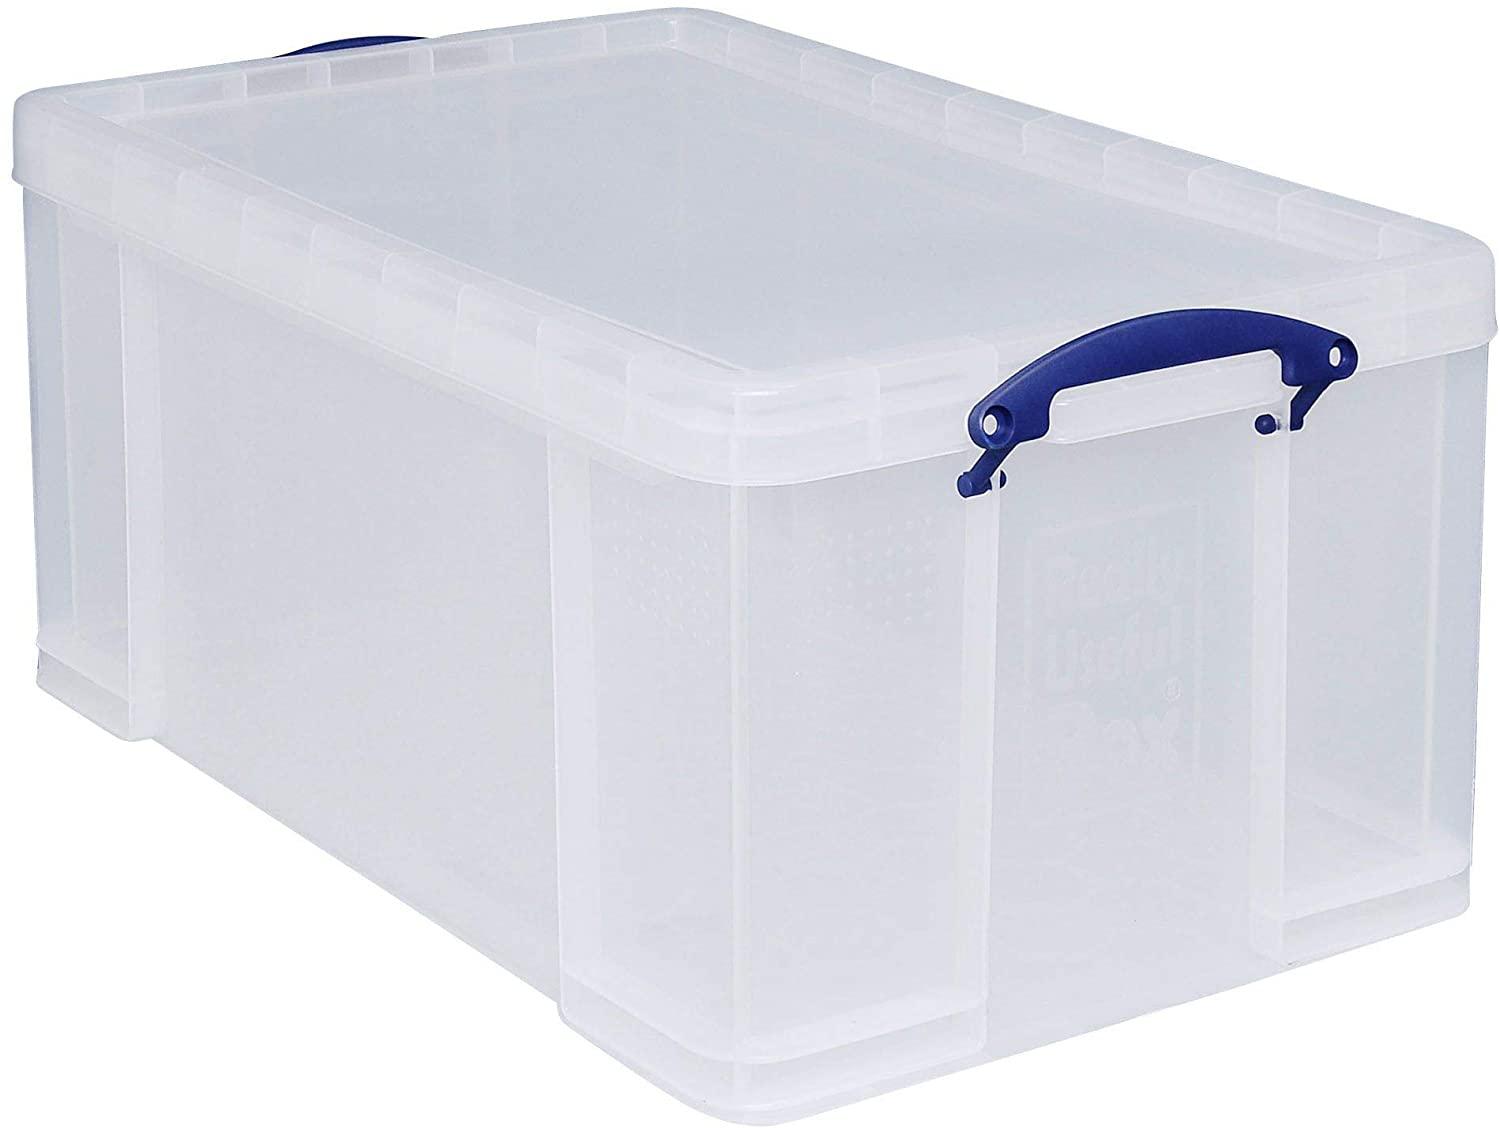 für Ordnen und Aufbewahren 710 x 440 x 310 mm Really Useful Box 2 Stück 64 Liter transparent